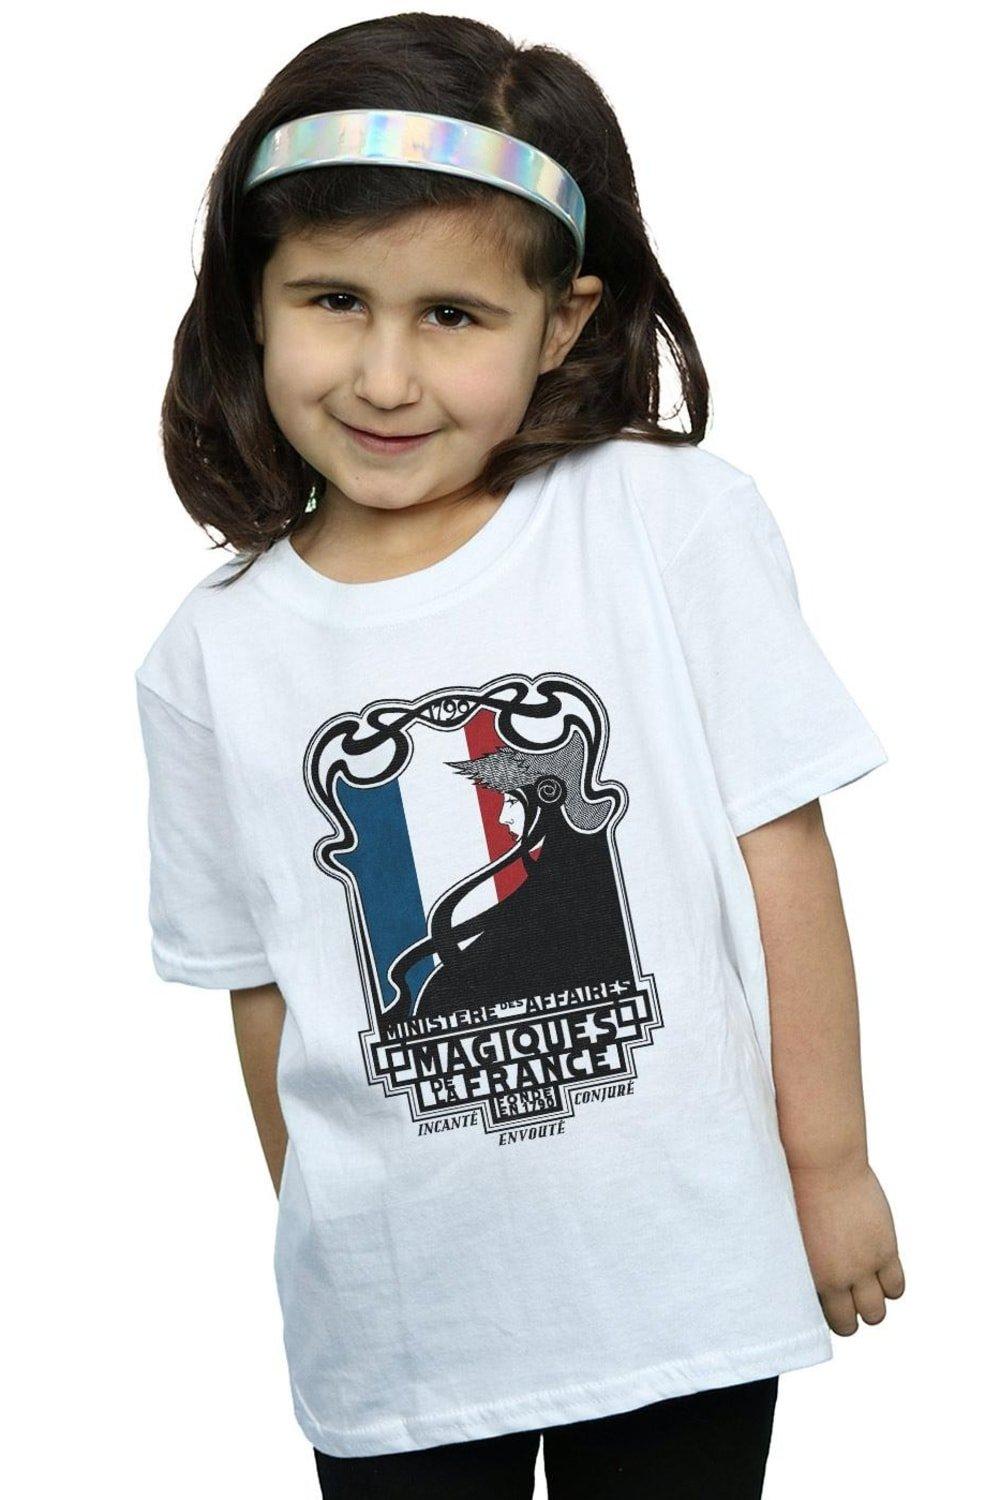 Magiques De La France Cotton T-Shirt